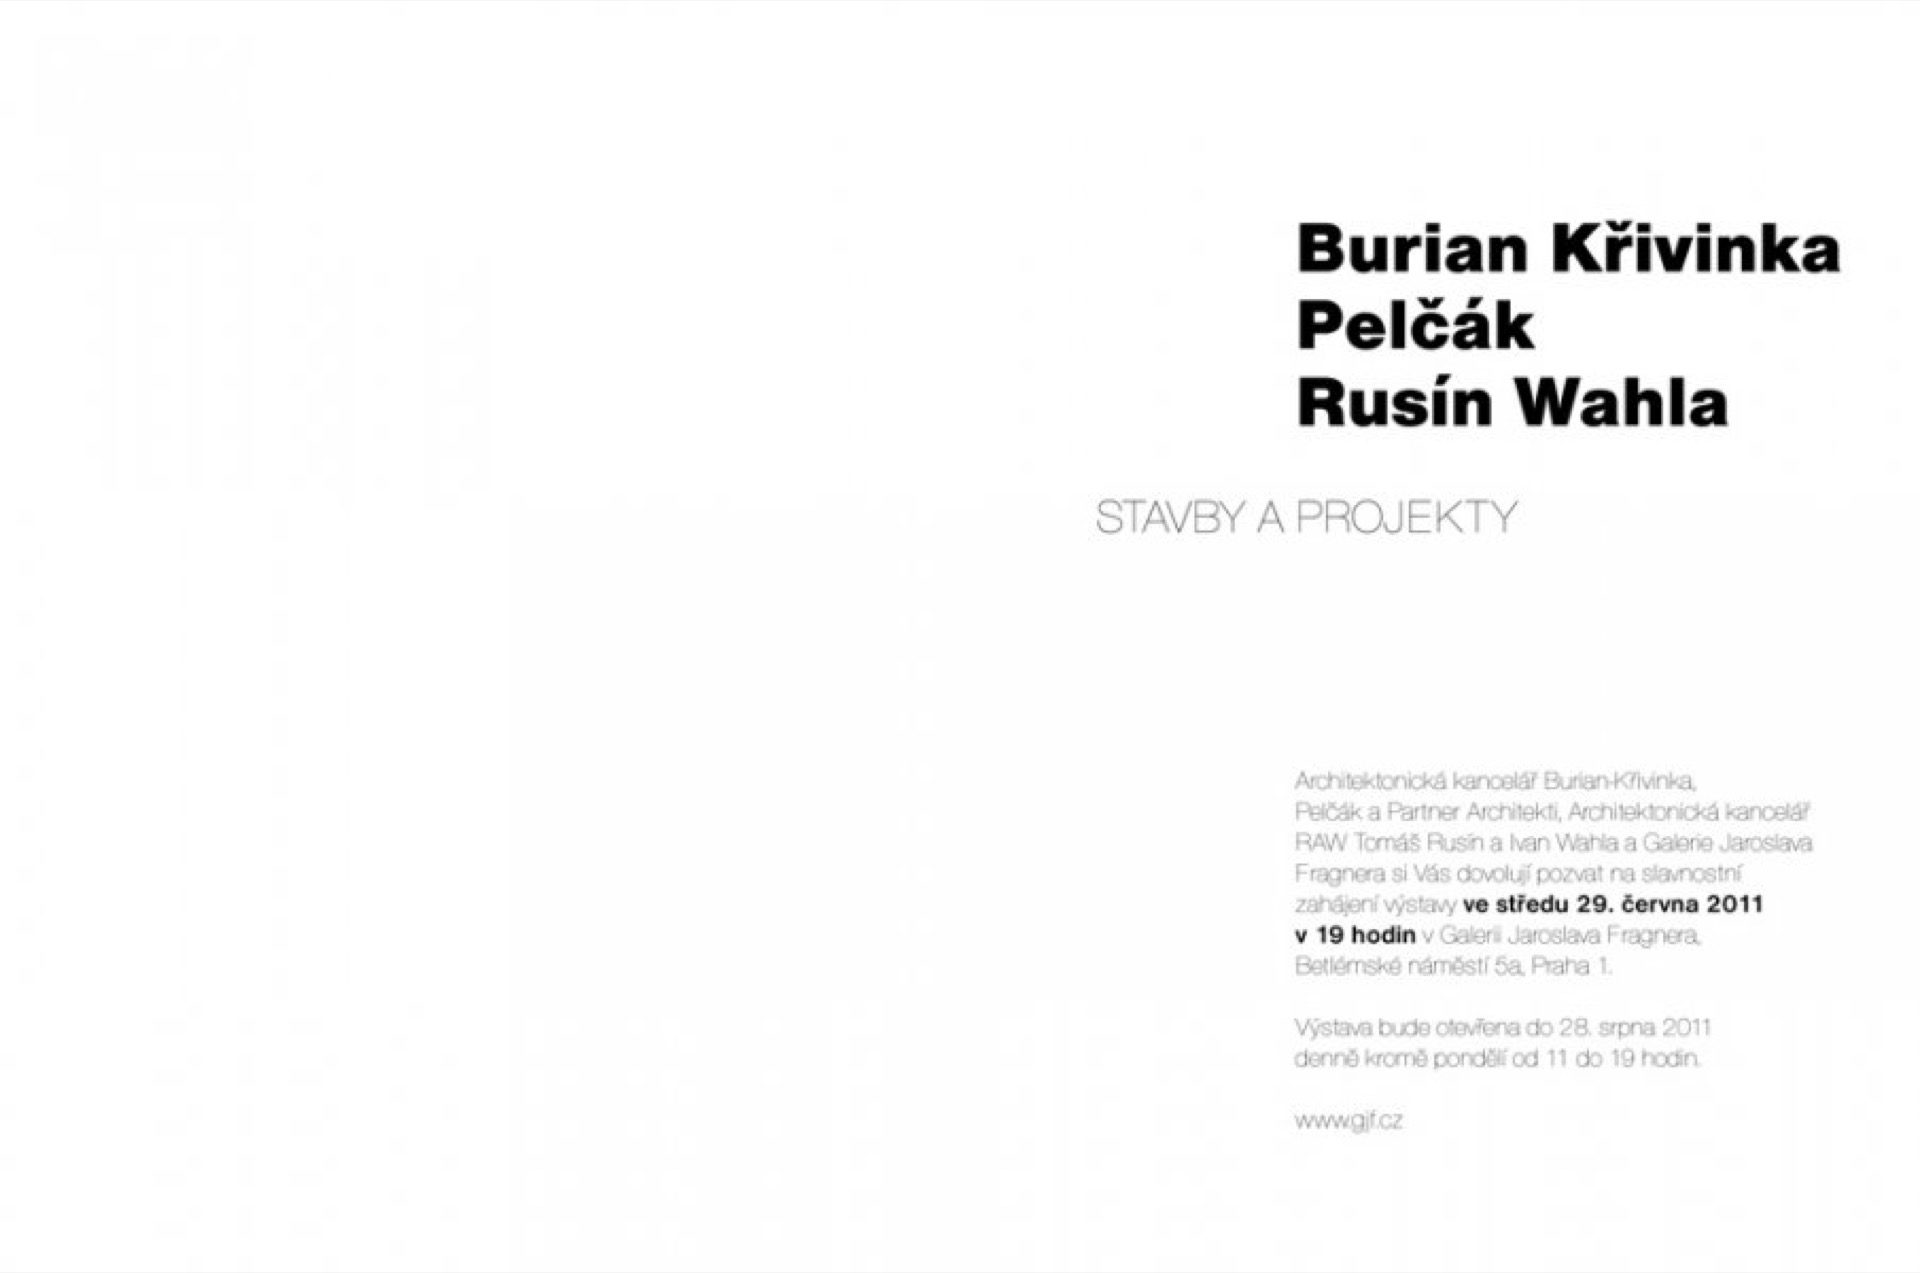 Pozvánka na výstavu Burian Křivinka Pelčák Rusín Wahla Stavby a projekty